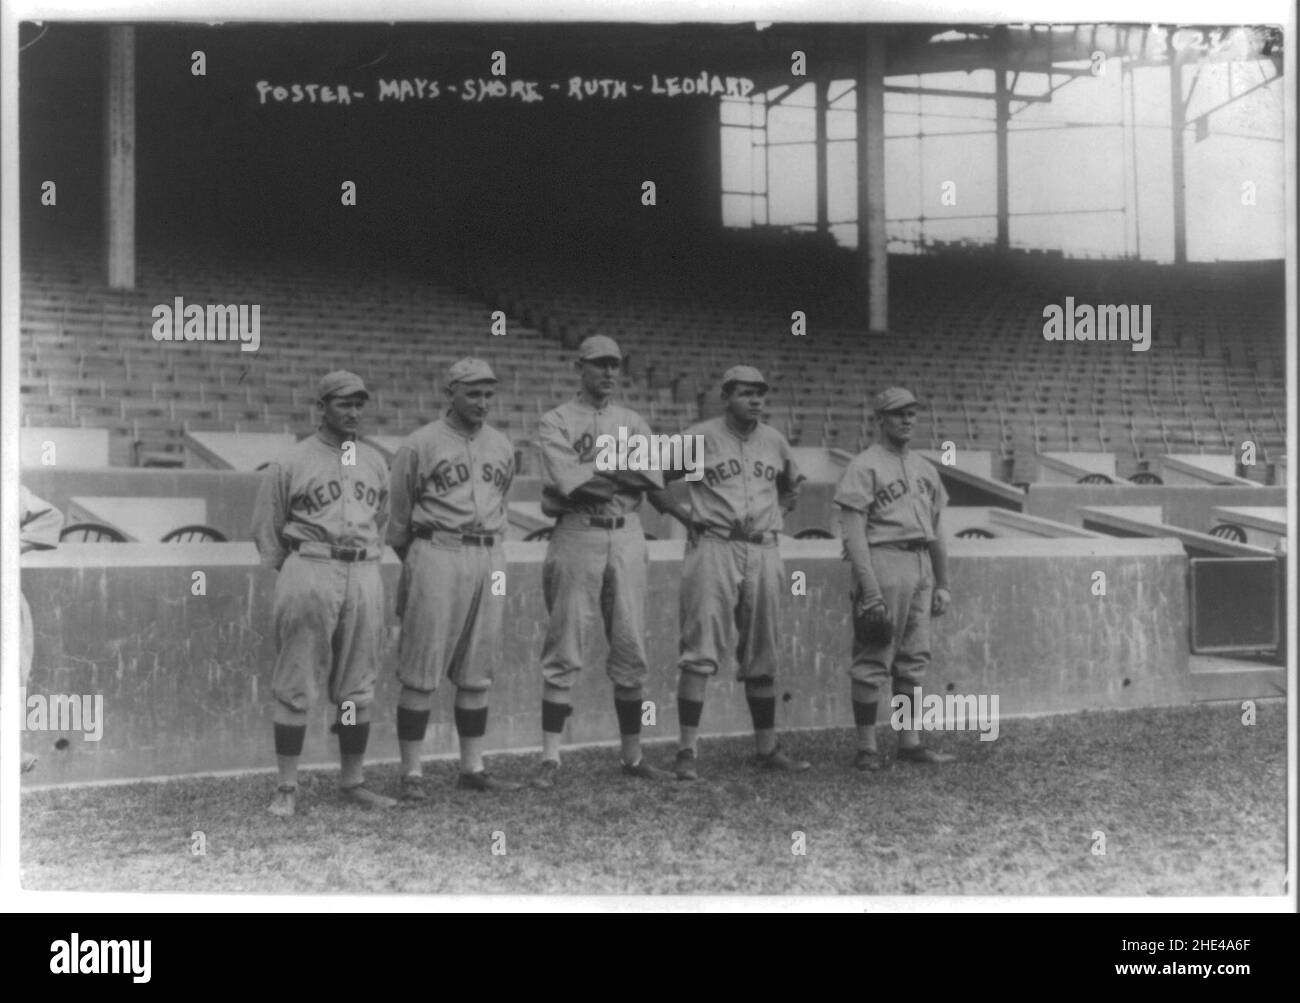 Rube Foster, Carl Mays, Ernie Shore, Babe Ruth, Leonard hollandais,Boston AL, 10-7-1915 (baseball) Banque D'Images